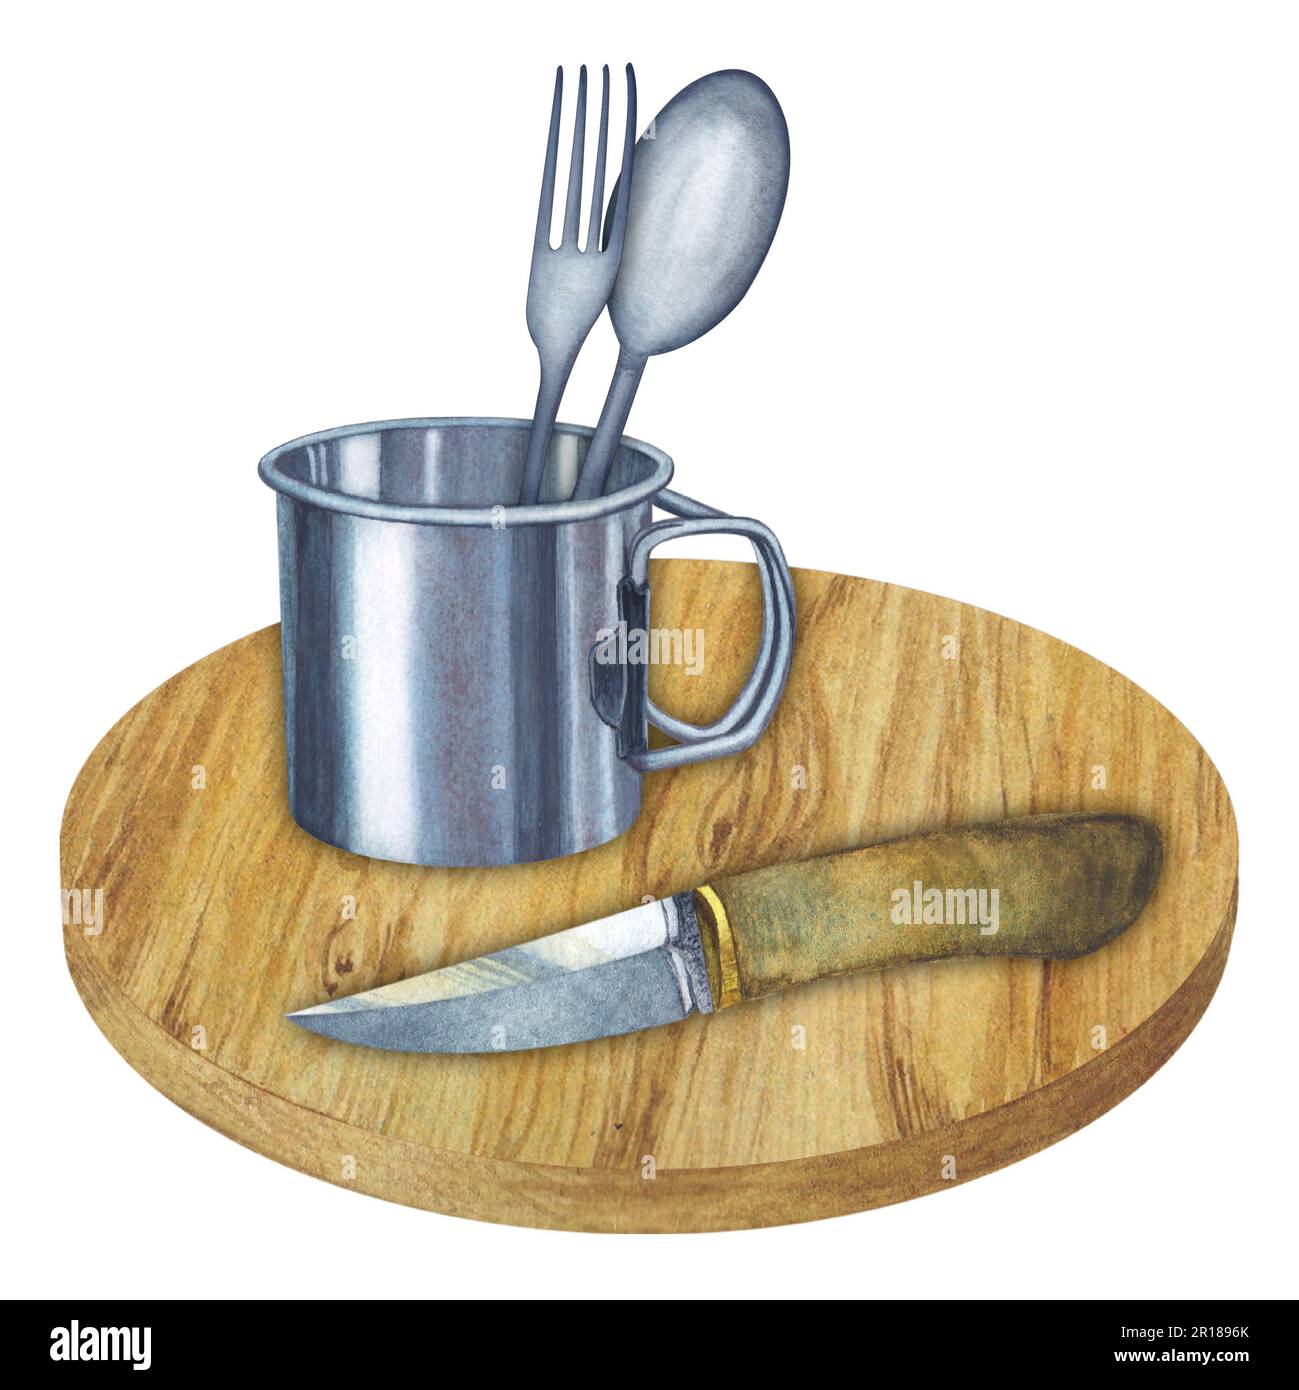 Composition de l'aquarelle illustration de la planche à découper ronde en bois avec couteau de chasse, tasse en métal, cuillère et fourchette. Dessiné à la main. Banque D'Images